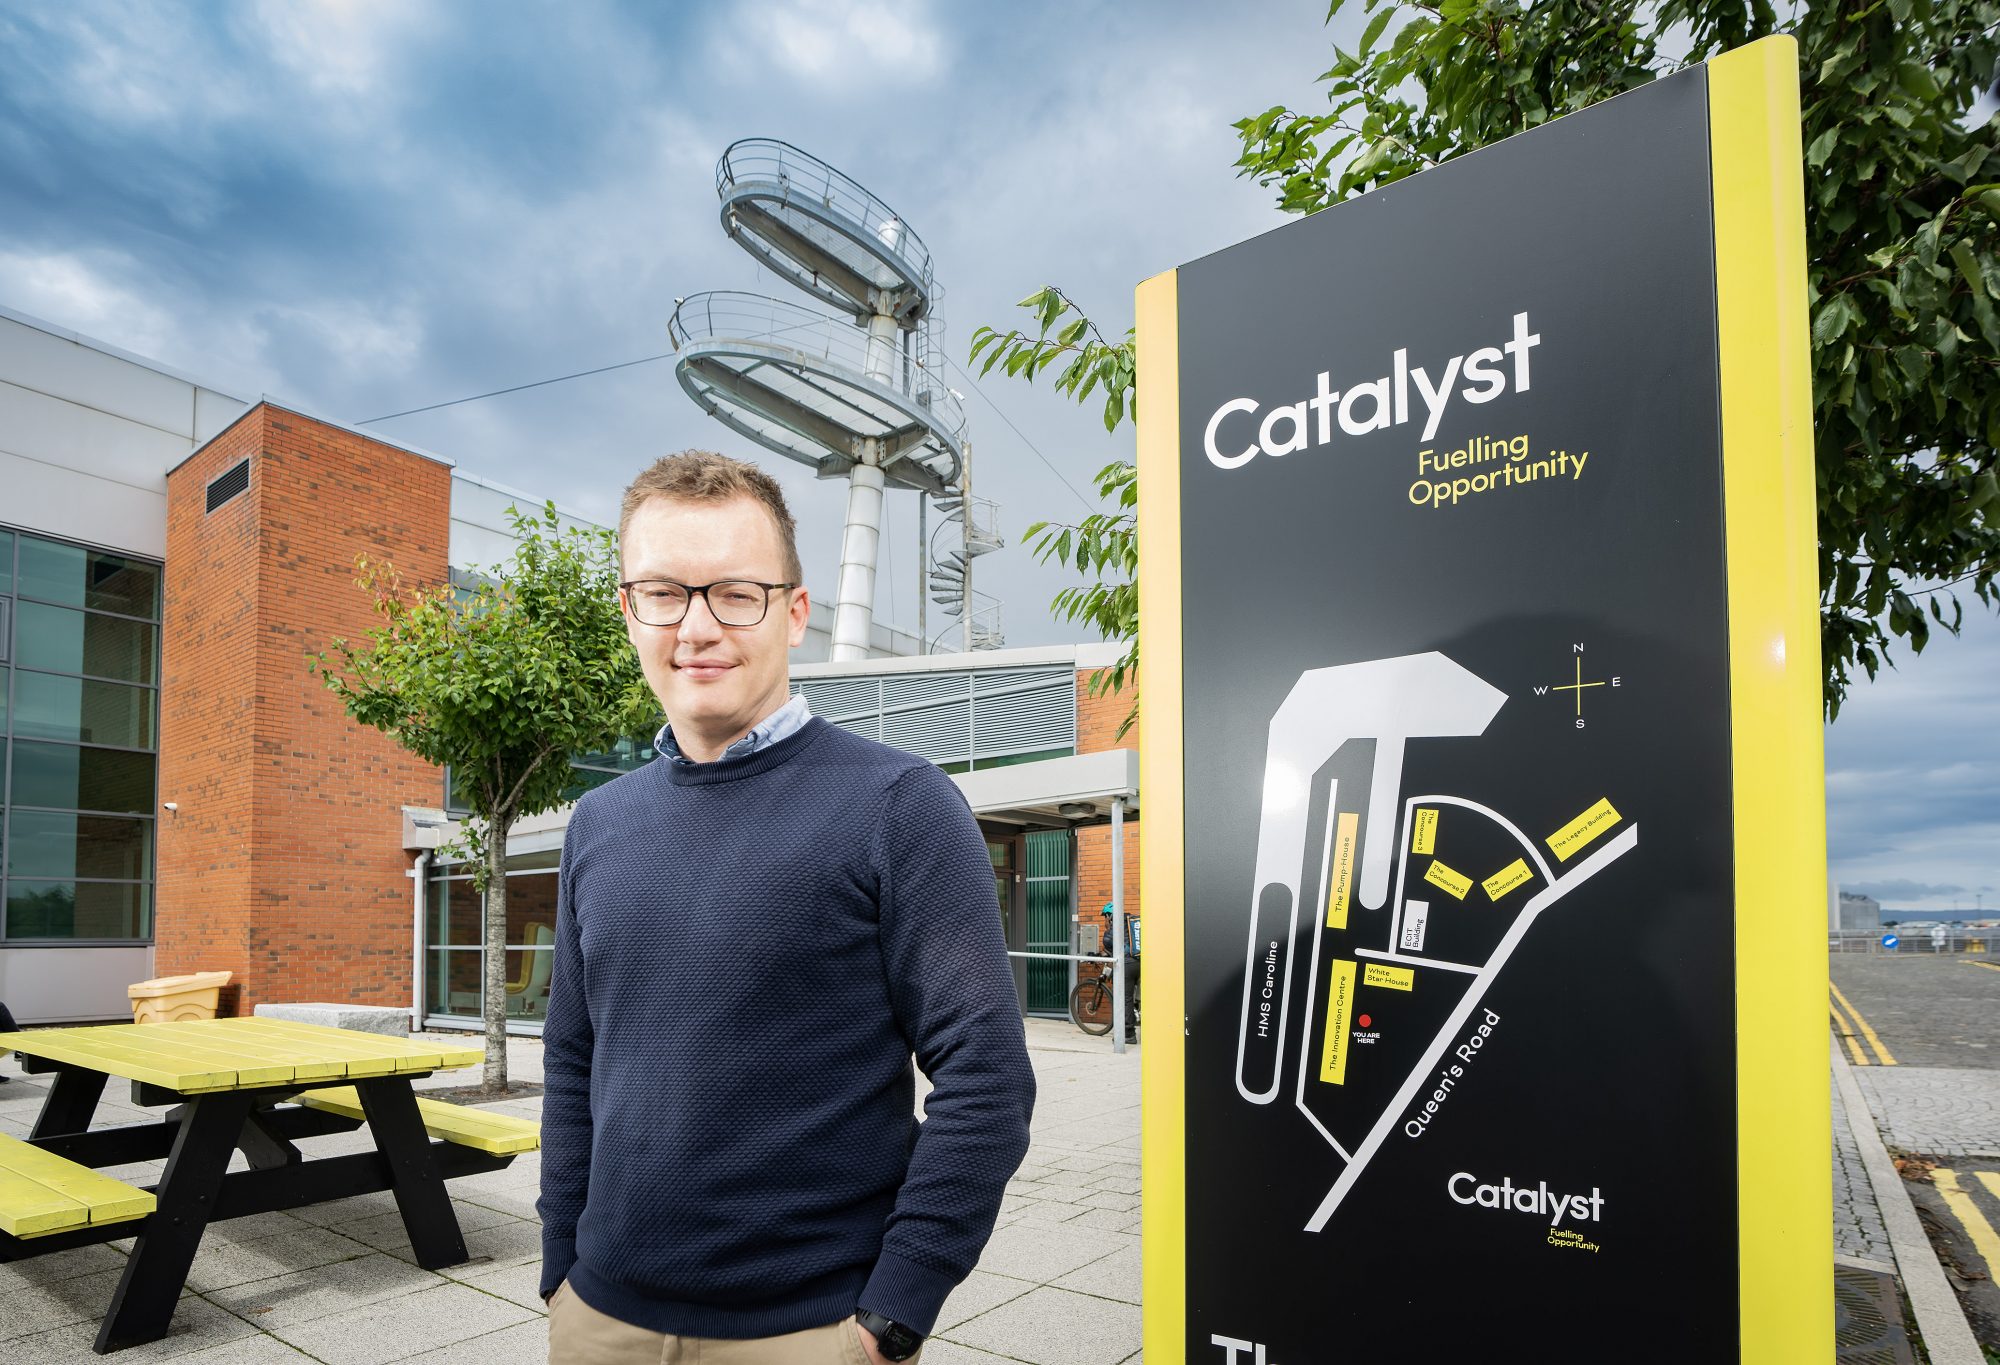 Craig Stewart, Head of Estates and Development at Catalyst